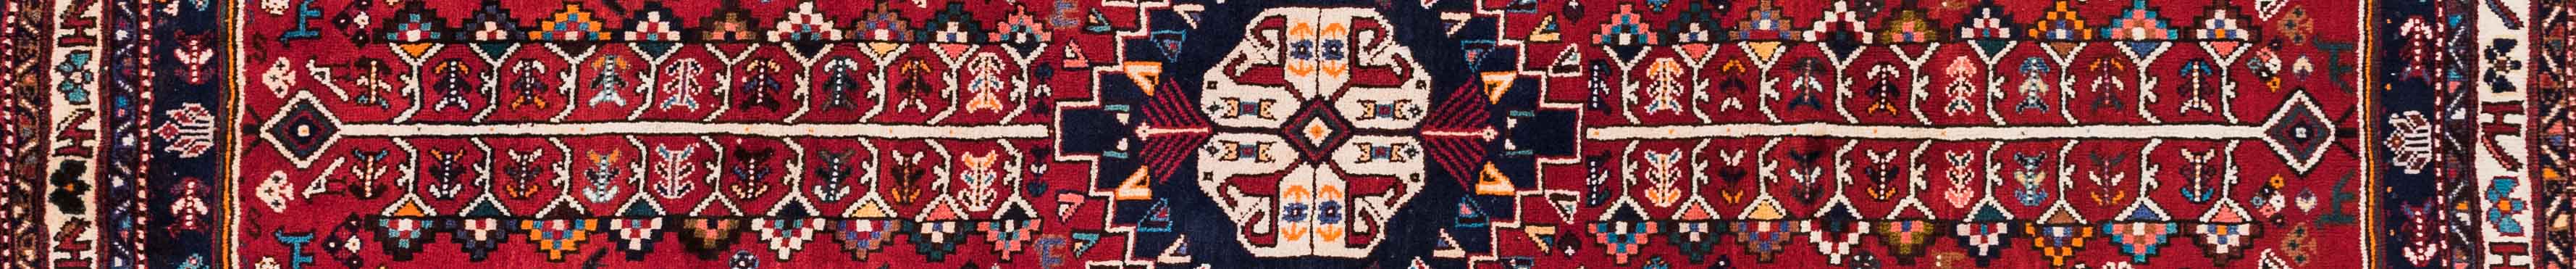 Shiraz Persian Carpet Rug N1Carpet Canada Montreal Tapis Persan 2150